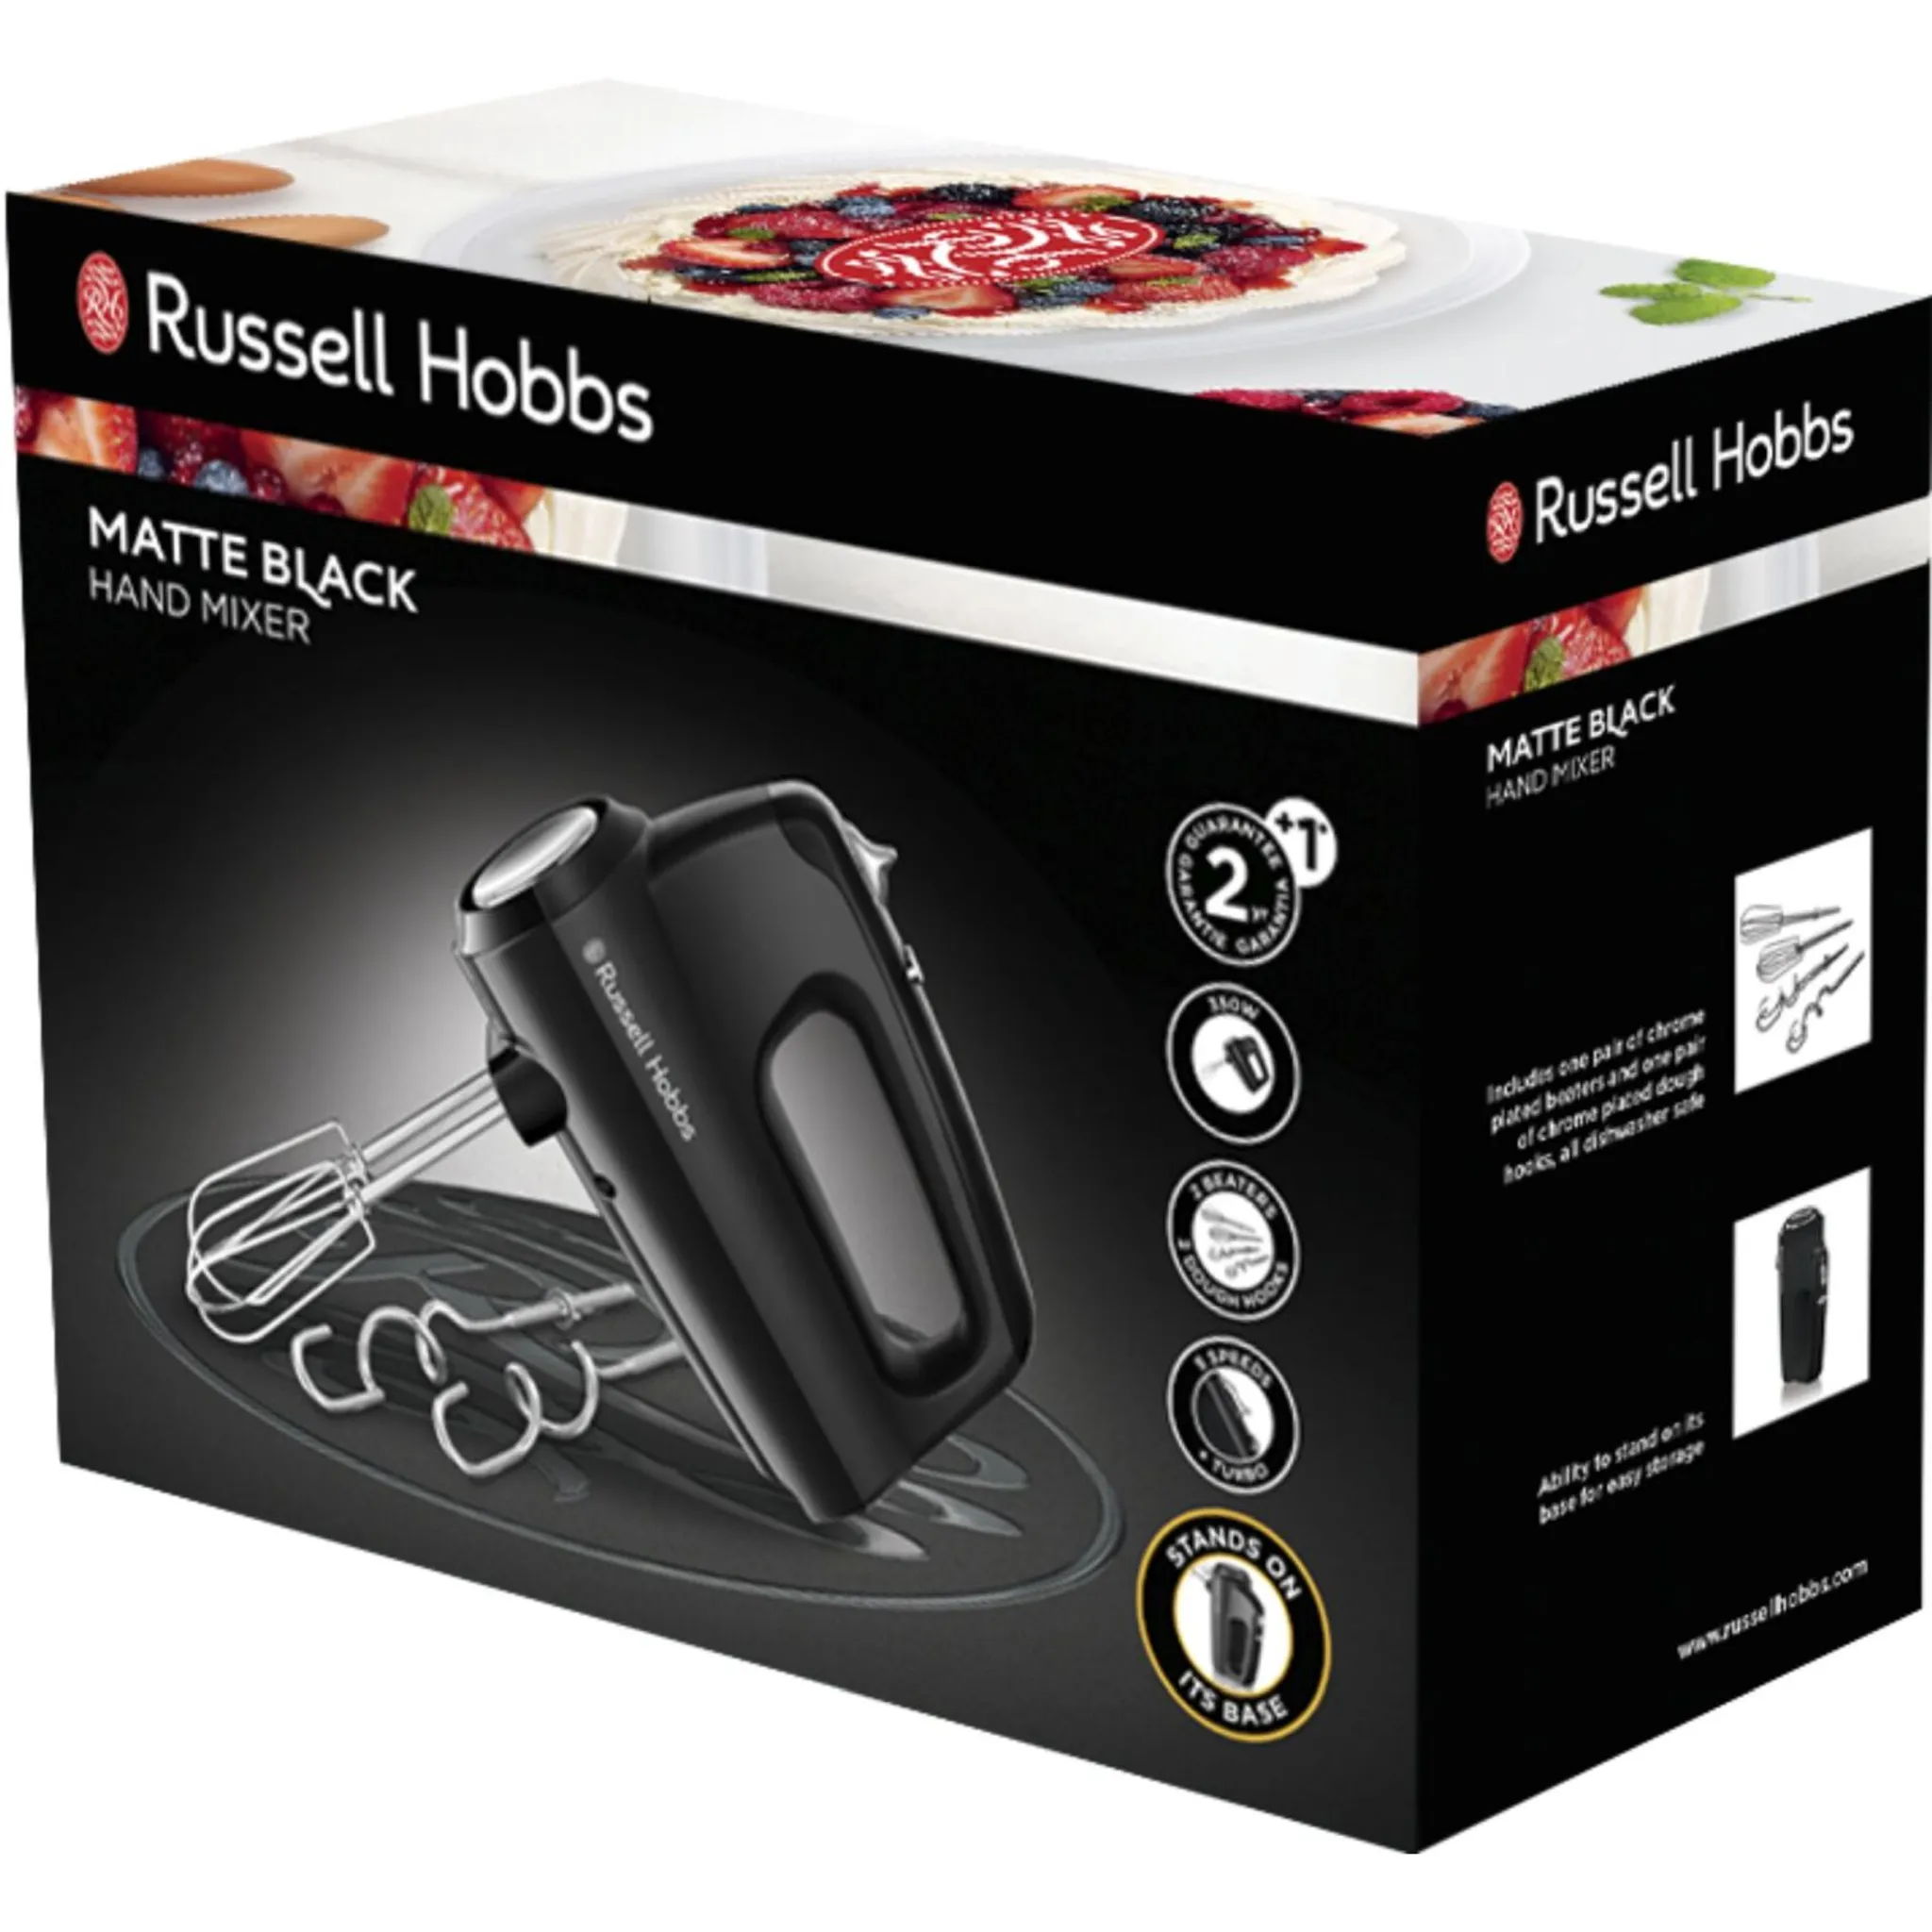 Hobbs Black Matte Handmixer 24672-56 Russell